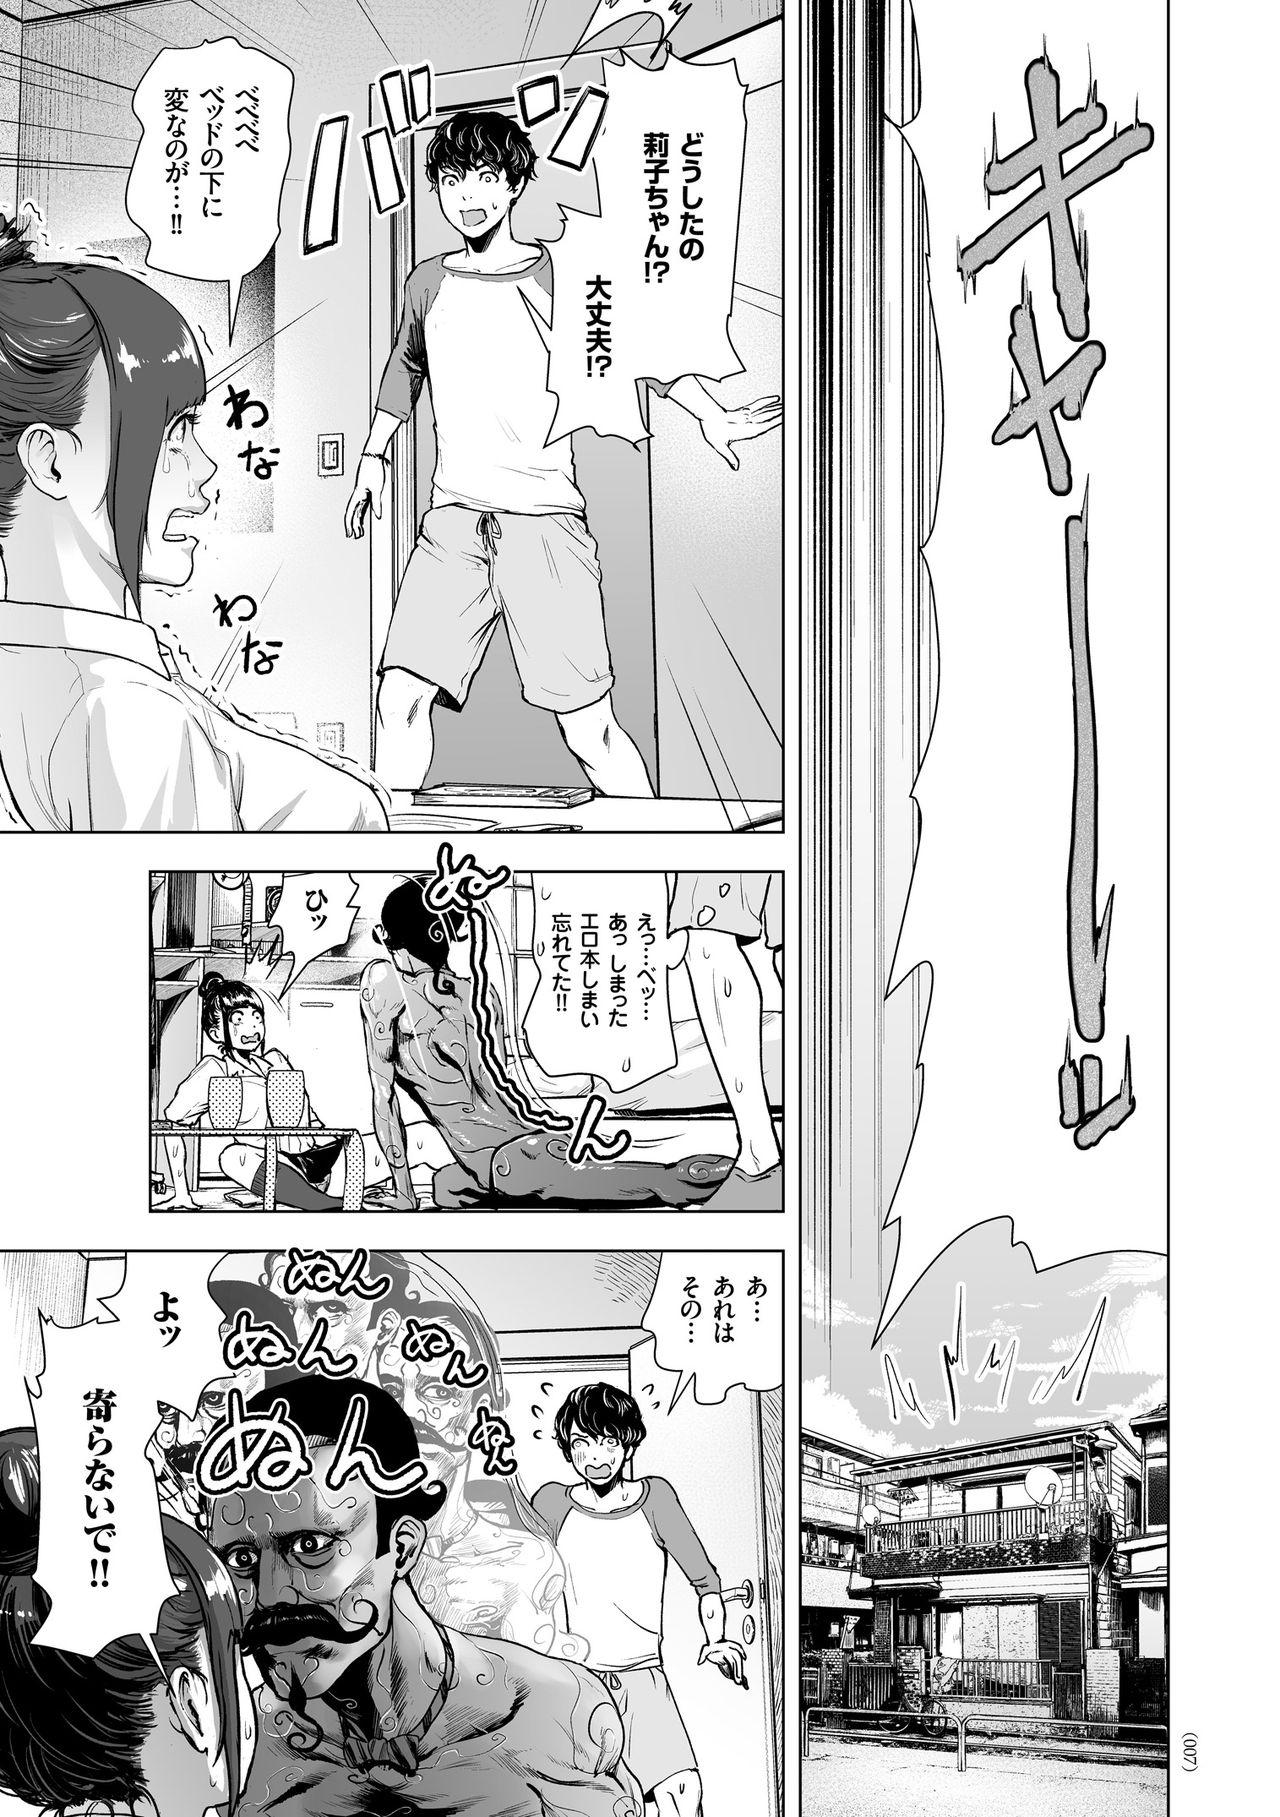 Mofos #Futsuu no Onnanoko Hot Milf - Page 6